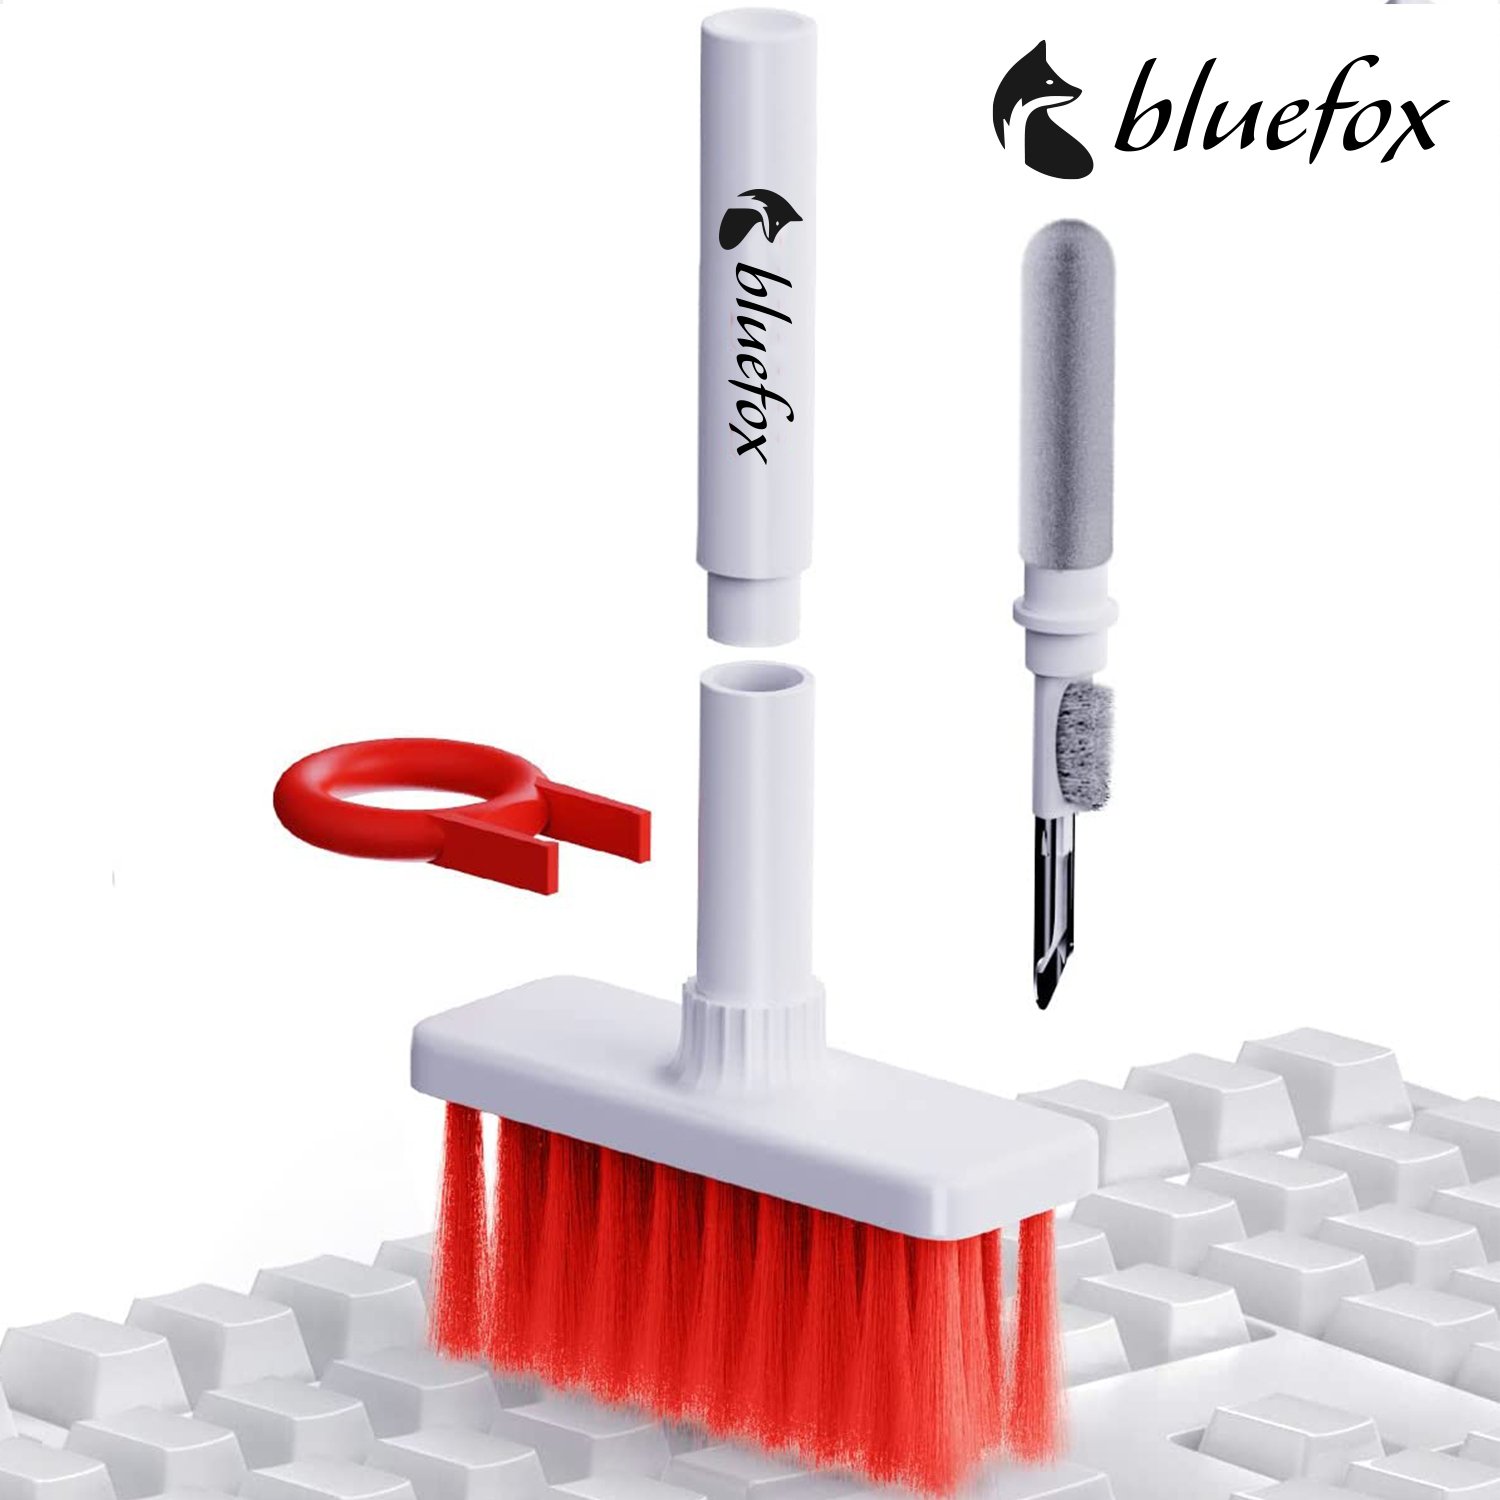 Bluefox Yumuşak Klavye Fırçası, Kulaklık Temizleyici 5'i 1  arada  Çok İşlevli Elektronik Cihaz Temizleme Seti